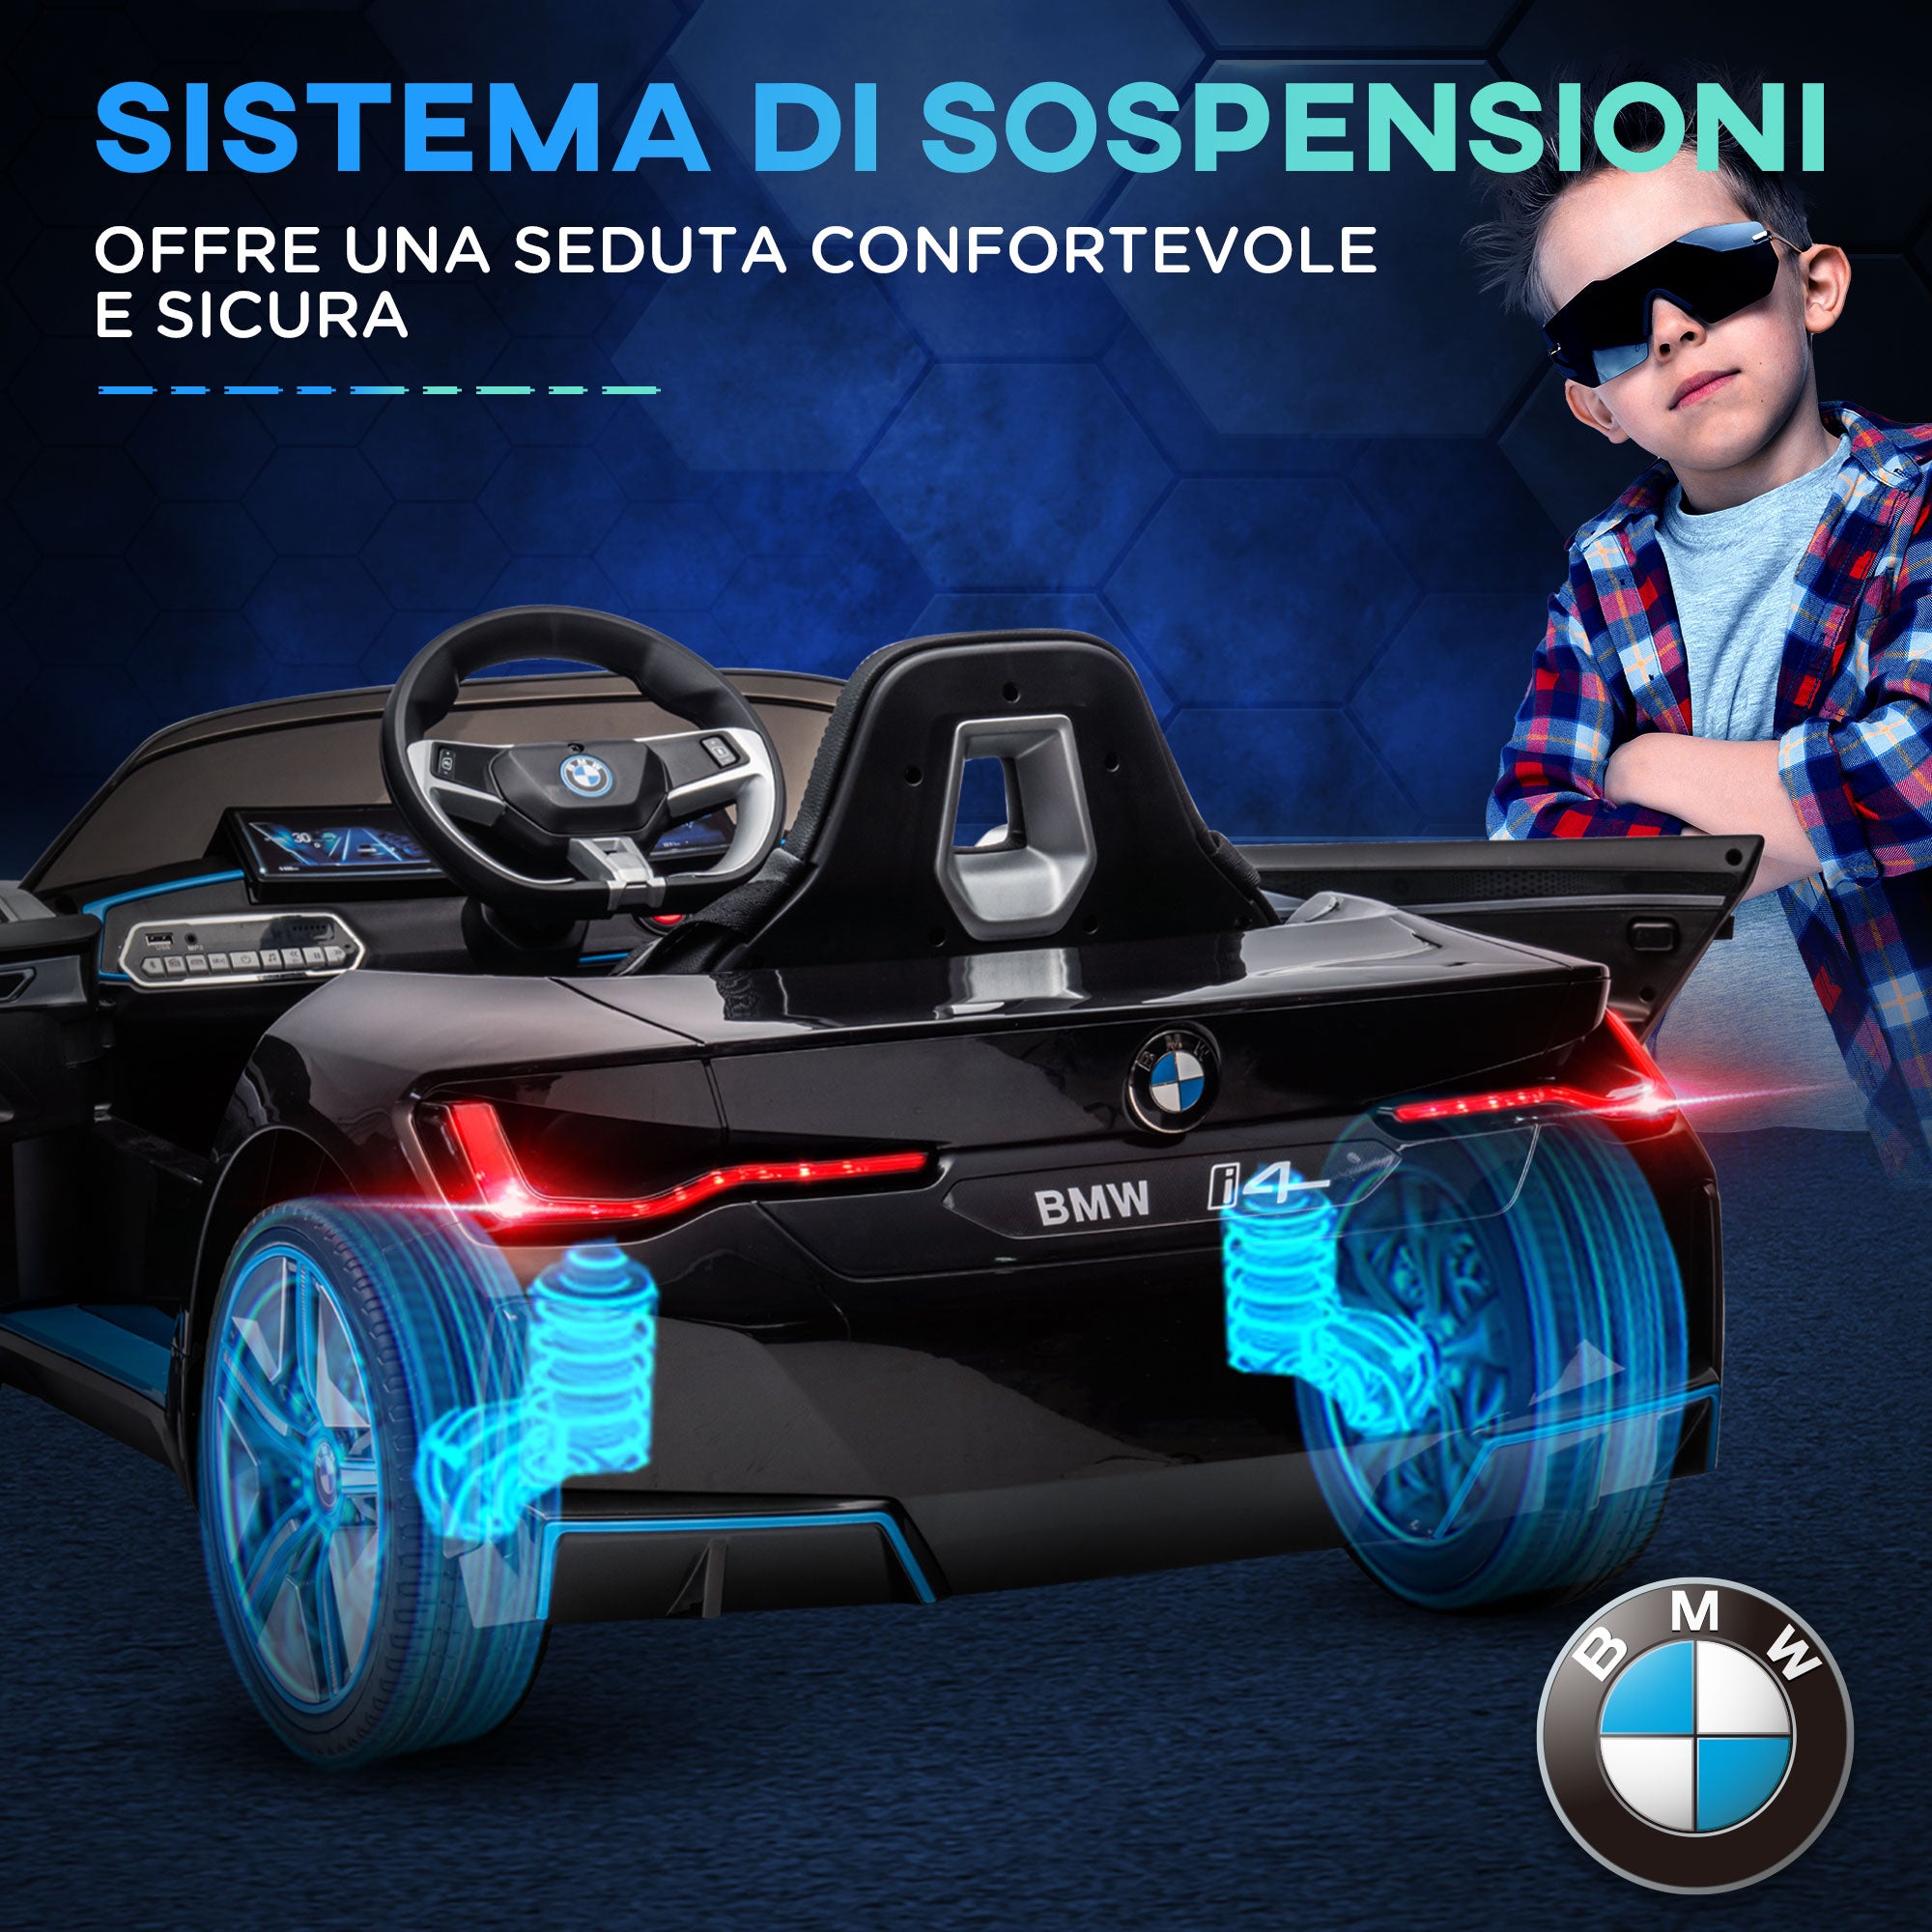 EASYCOMFORT Macchina Elettrica per Bambini 3-8 Anni con Licenza BMW con  Telecomando, Clacson e Fari, 115x67x45 cm, Nera